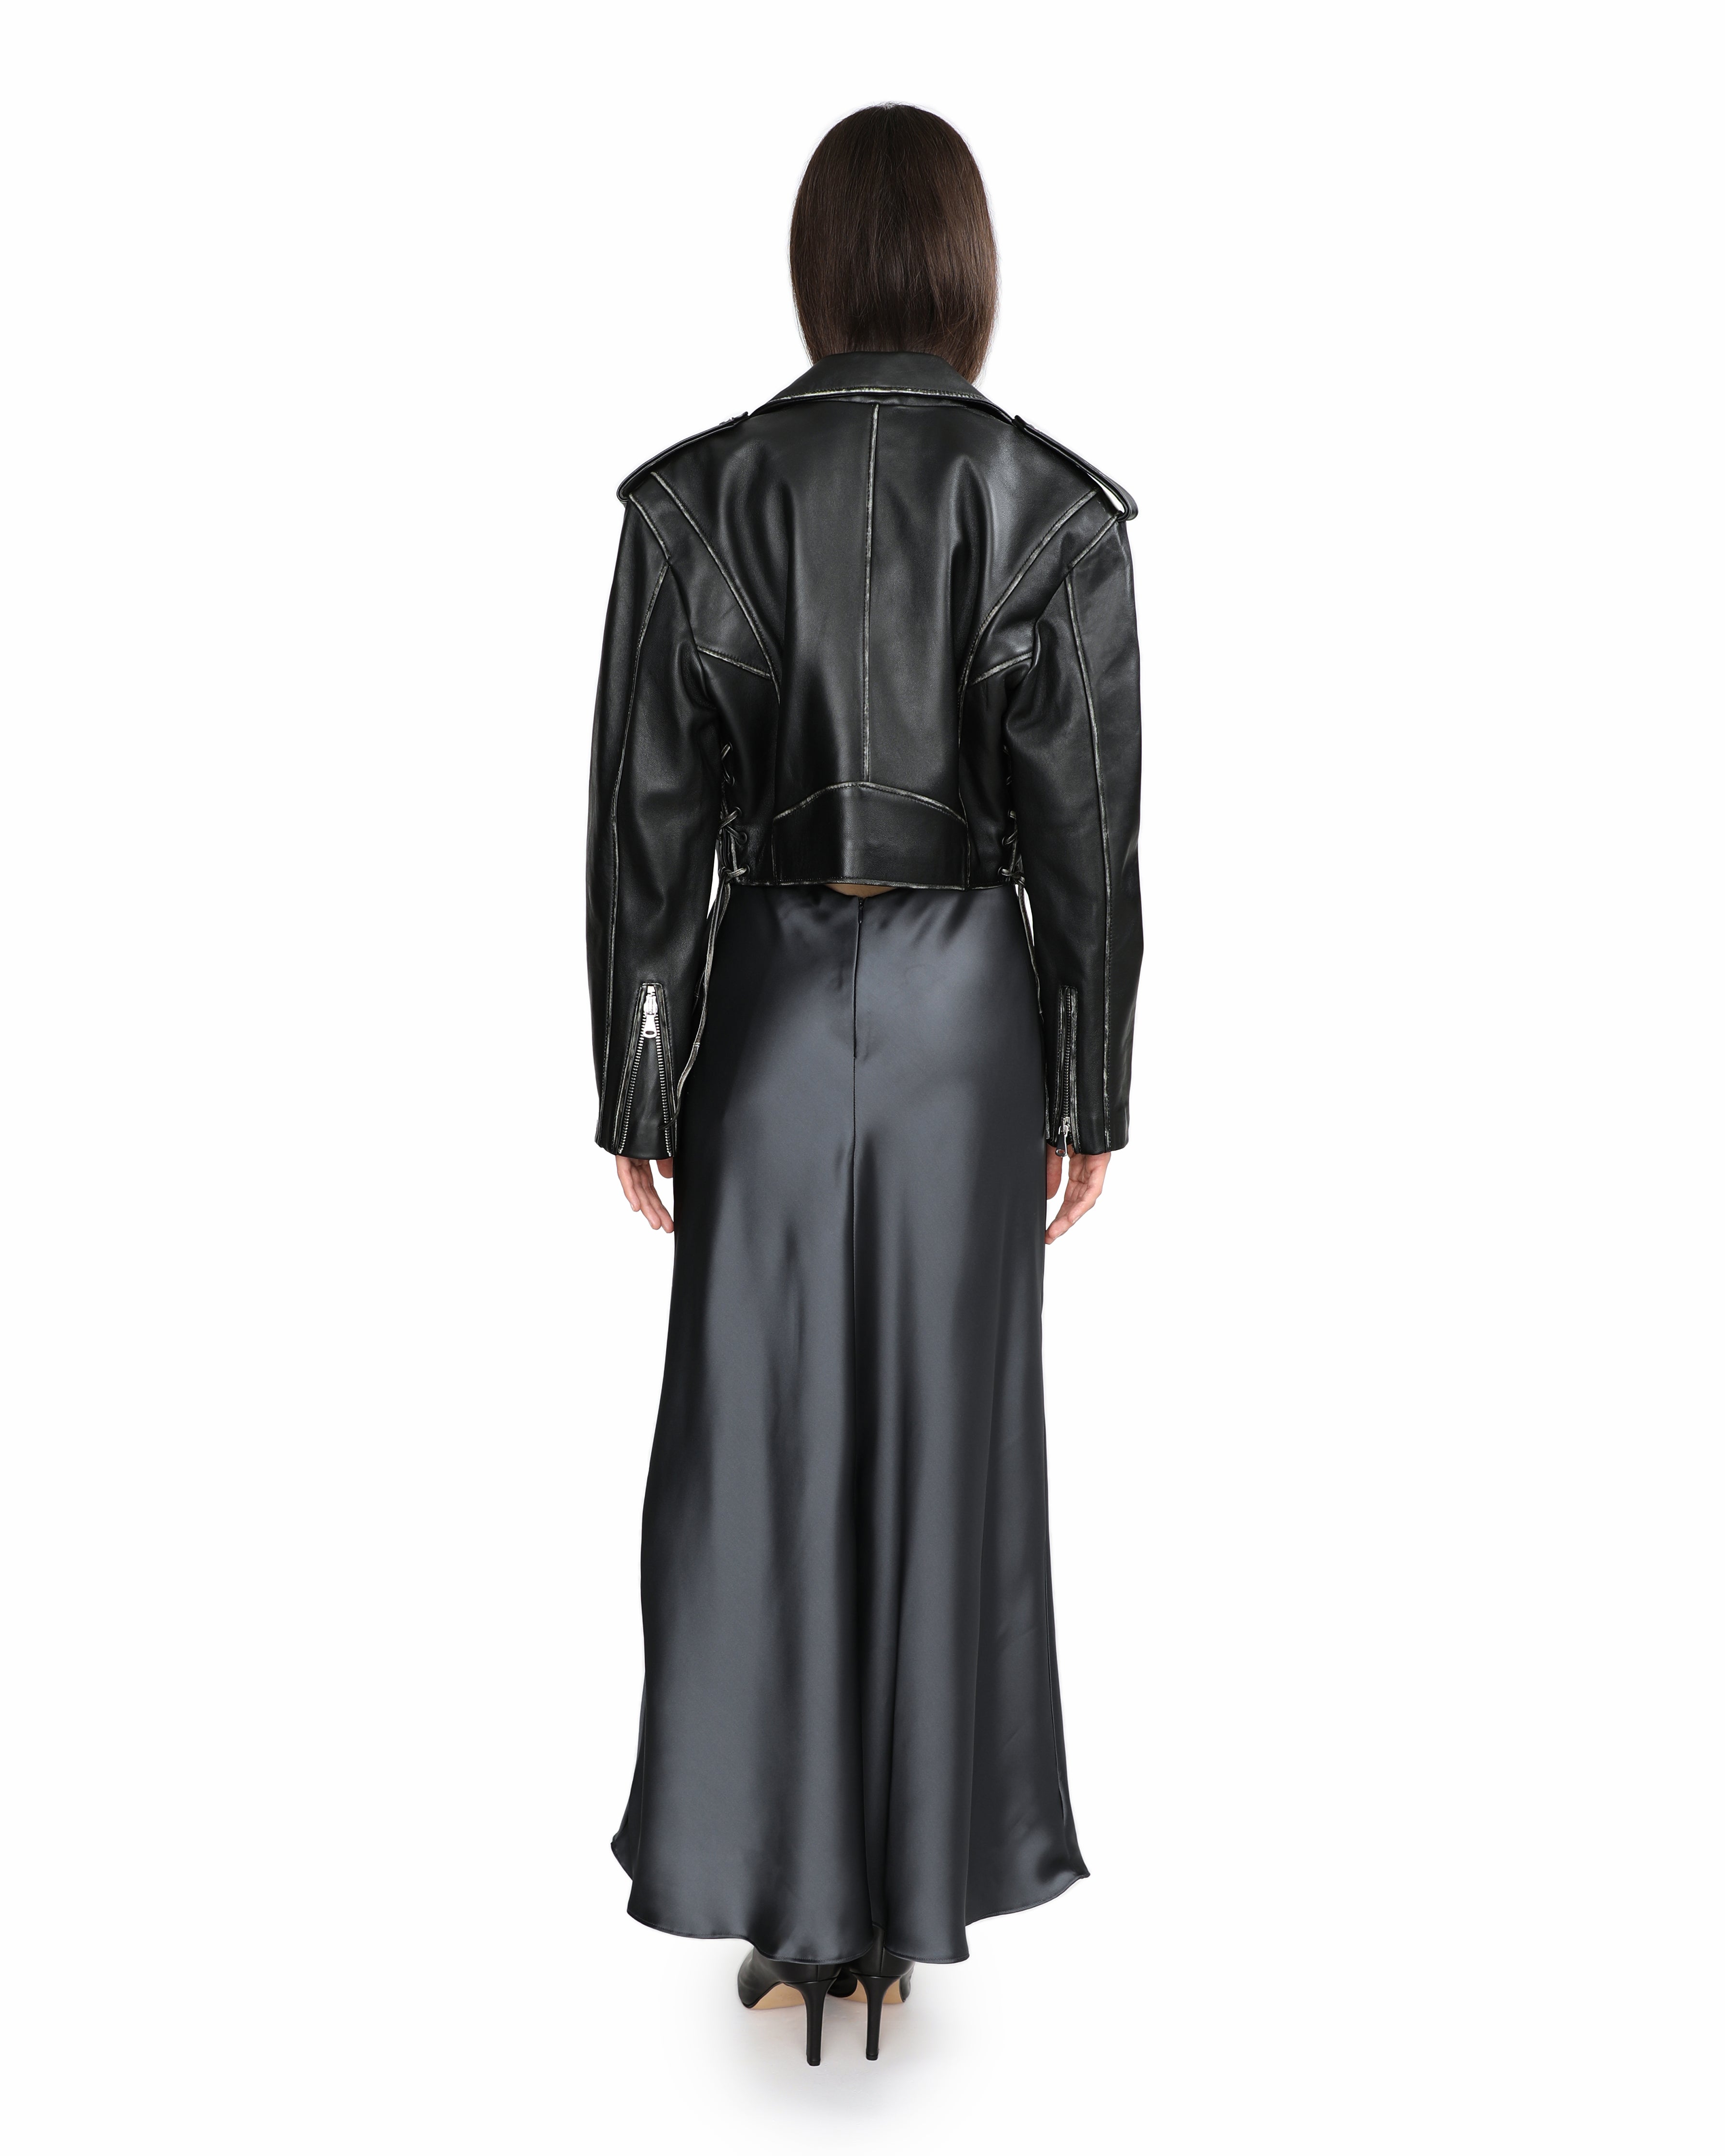 Amanda short black leather jacket with zipper and pockets back full photo